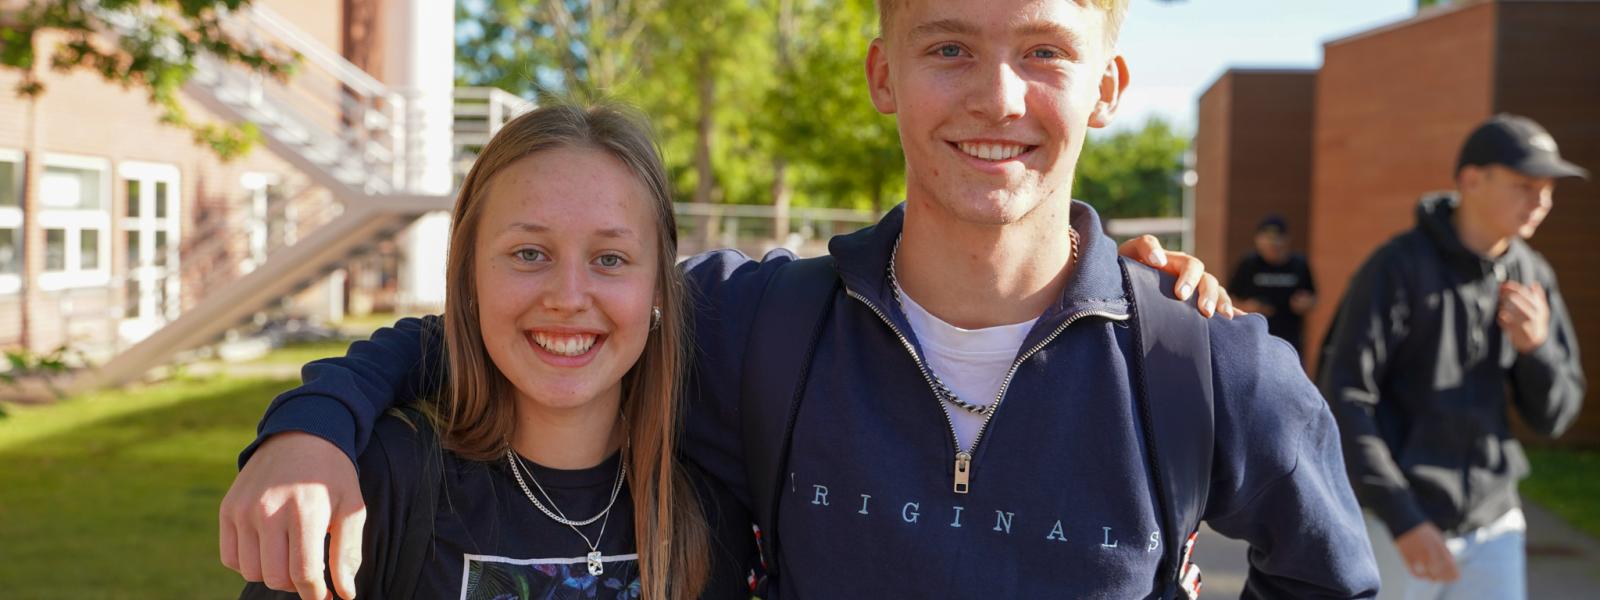 En dreng og en pige smiler til kameraet, men de holder om hinanden uden for skolen.